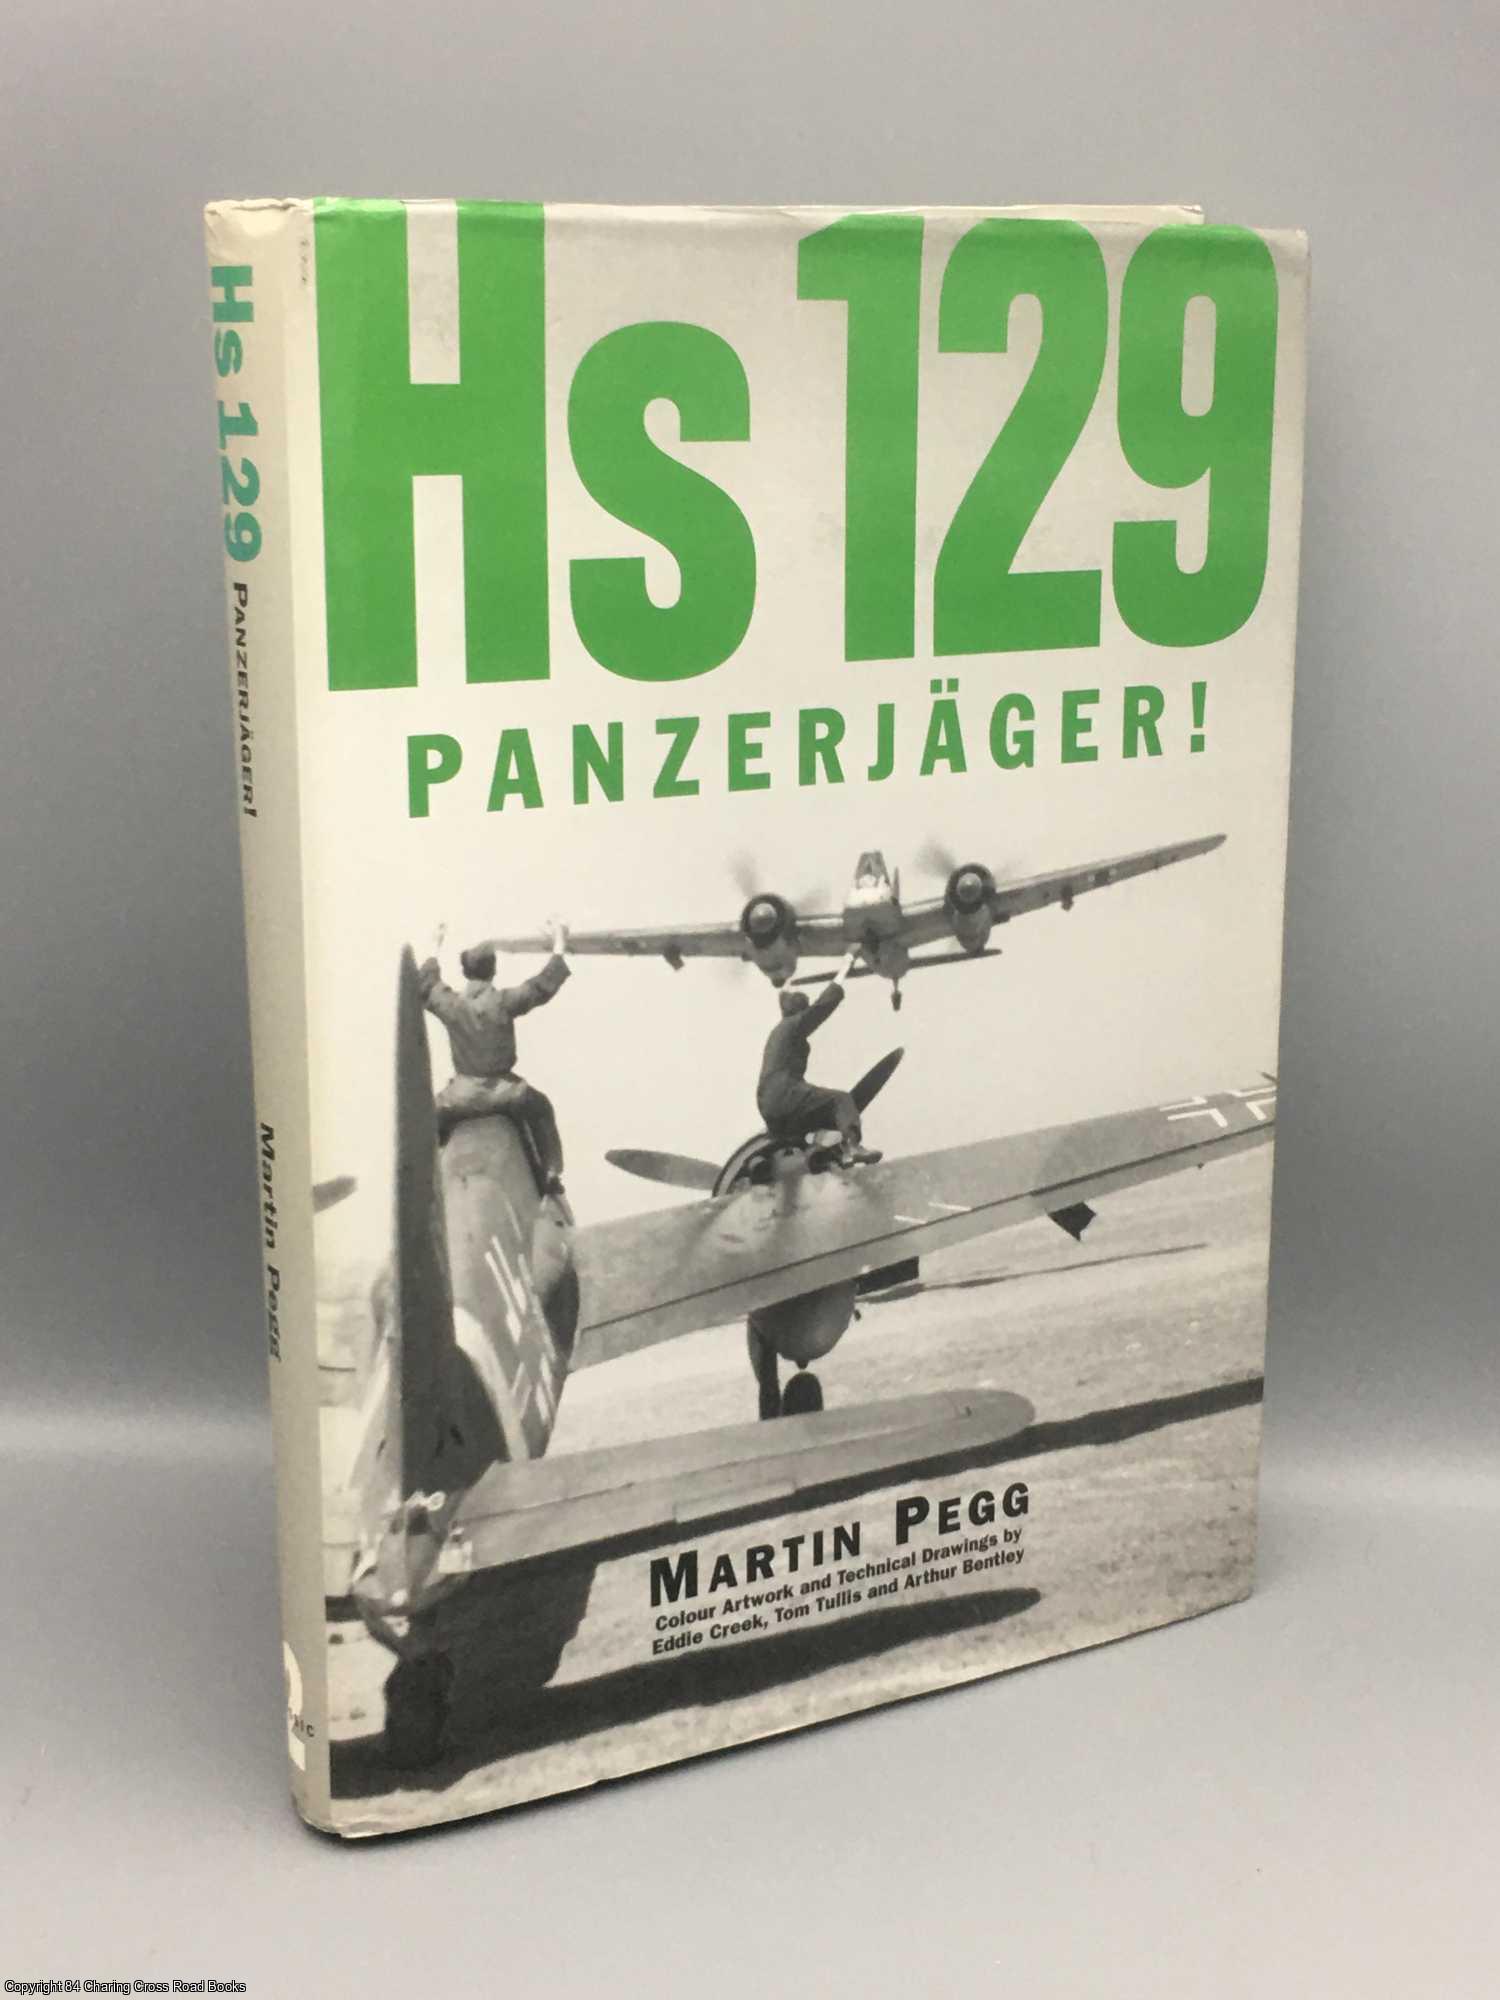 Pegg, Martin - Hs 129 Panzerjager!